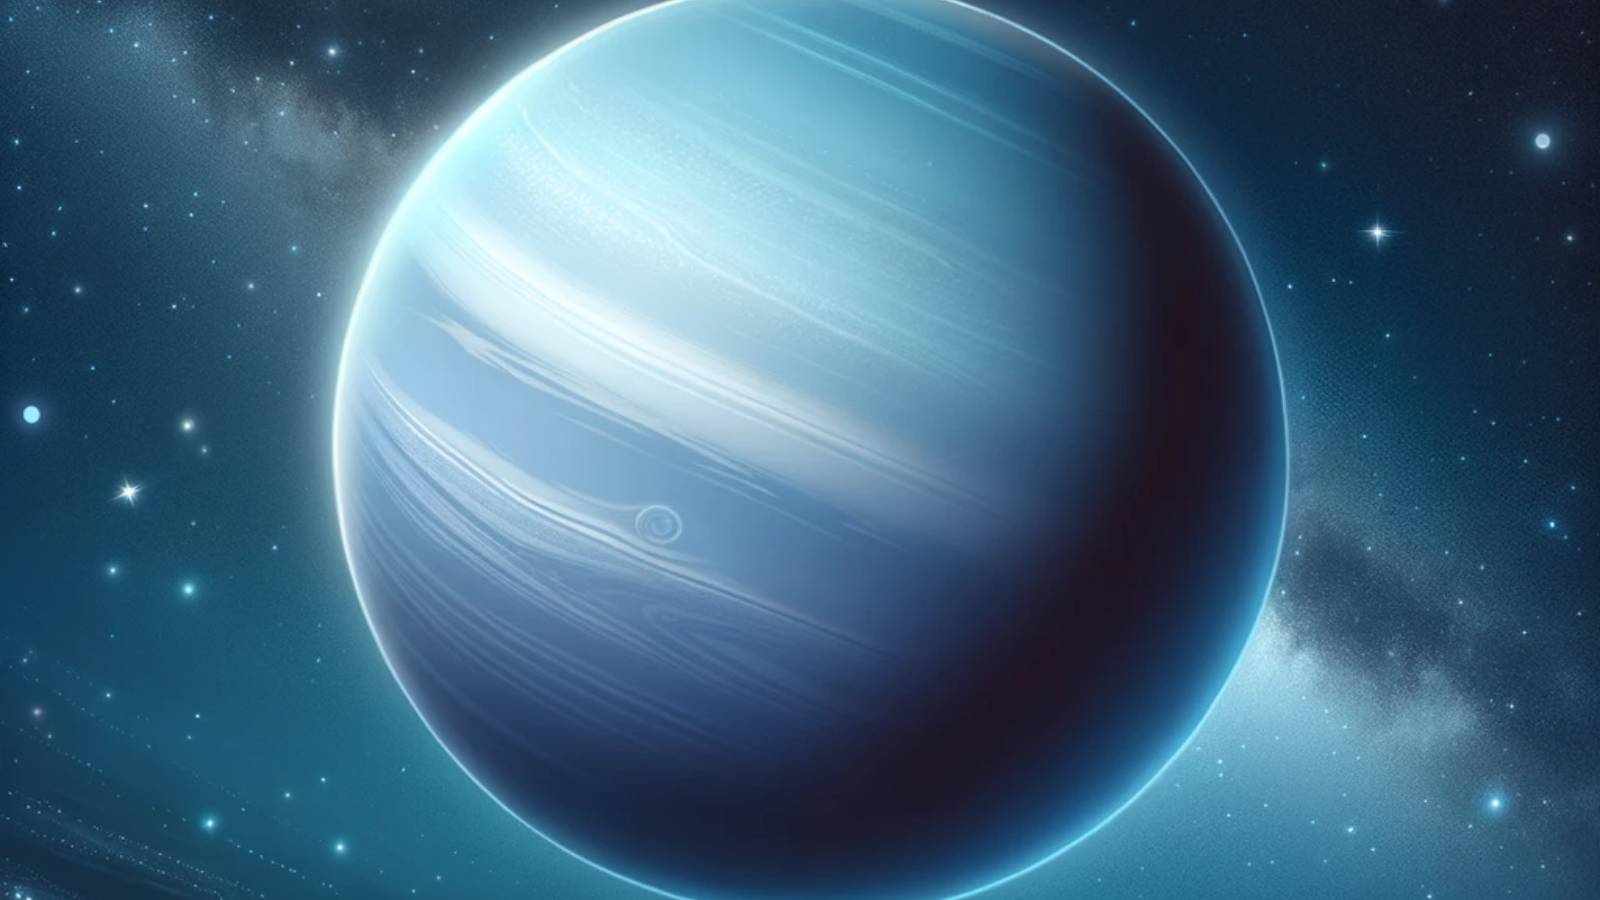 Den UTROLIGE opdagelse af planeten Uranus lavet af forskere